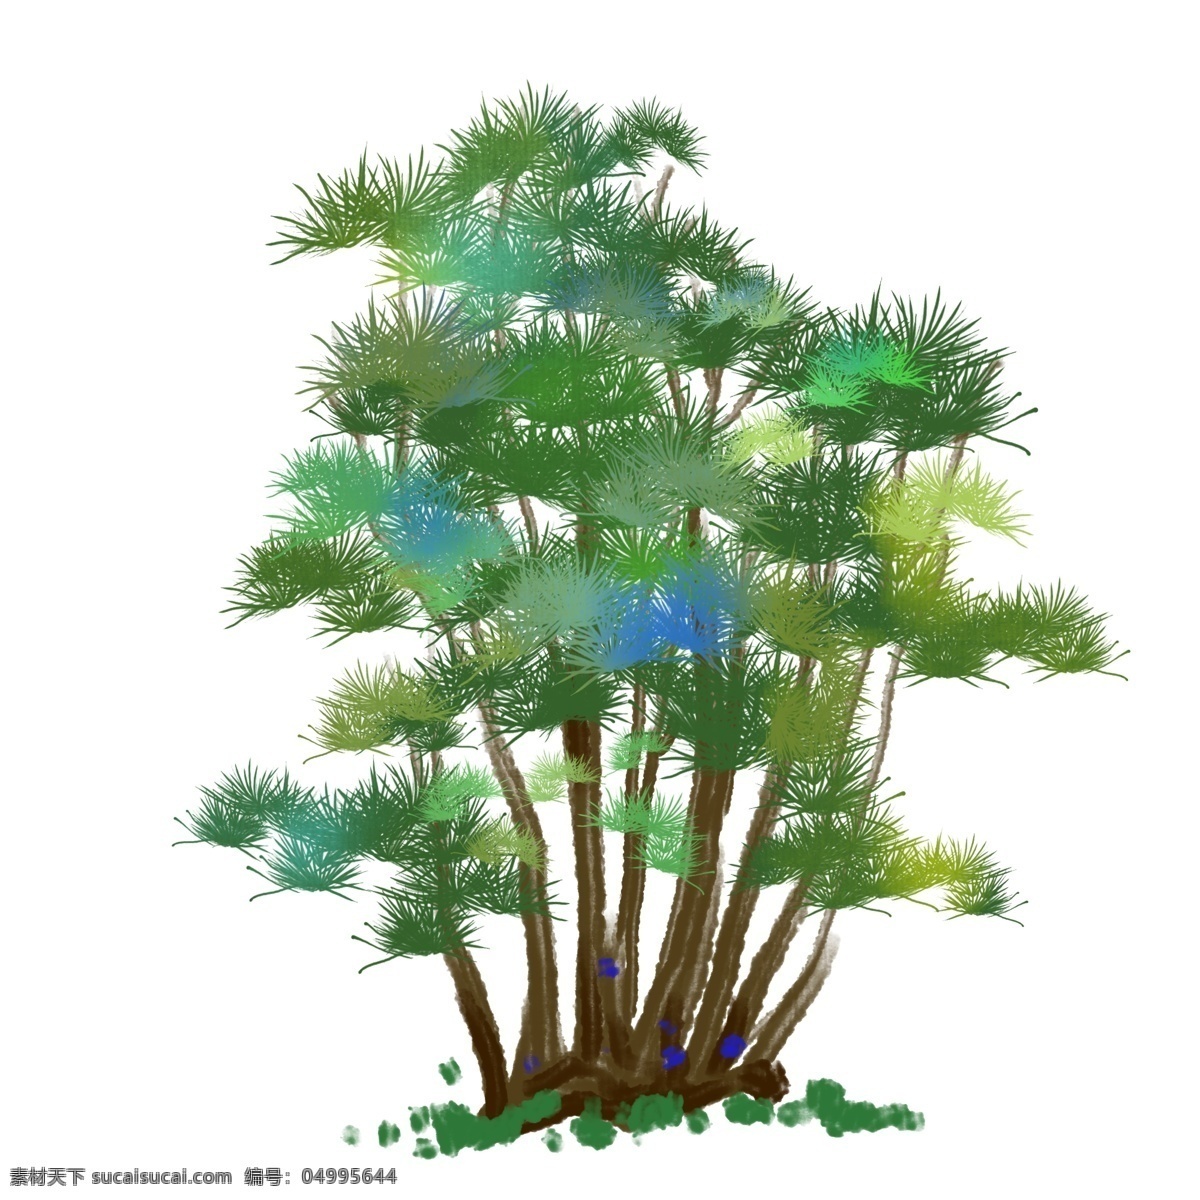 绿色 松树 小树 插画 松树的小树 卡通插画 植物插画 树木插画 小树插画 树叶插画 绿色的松树